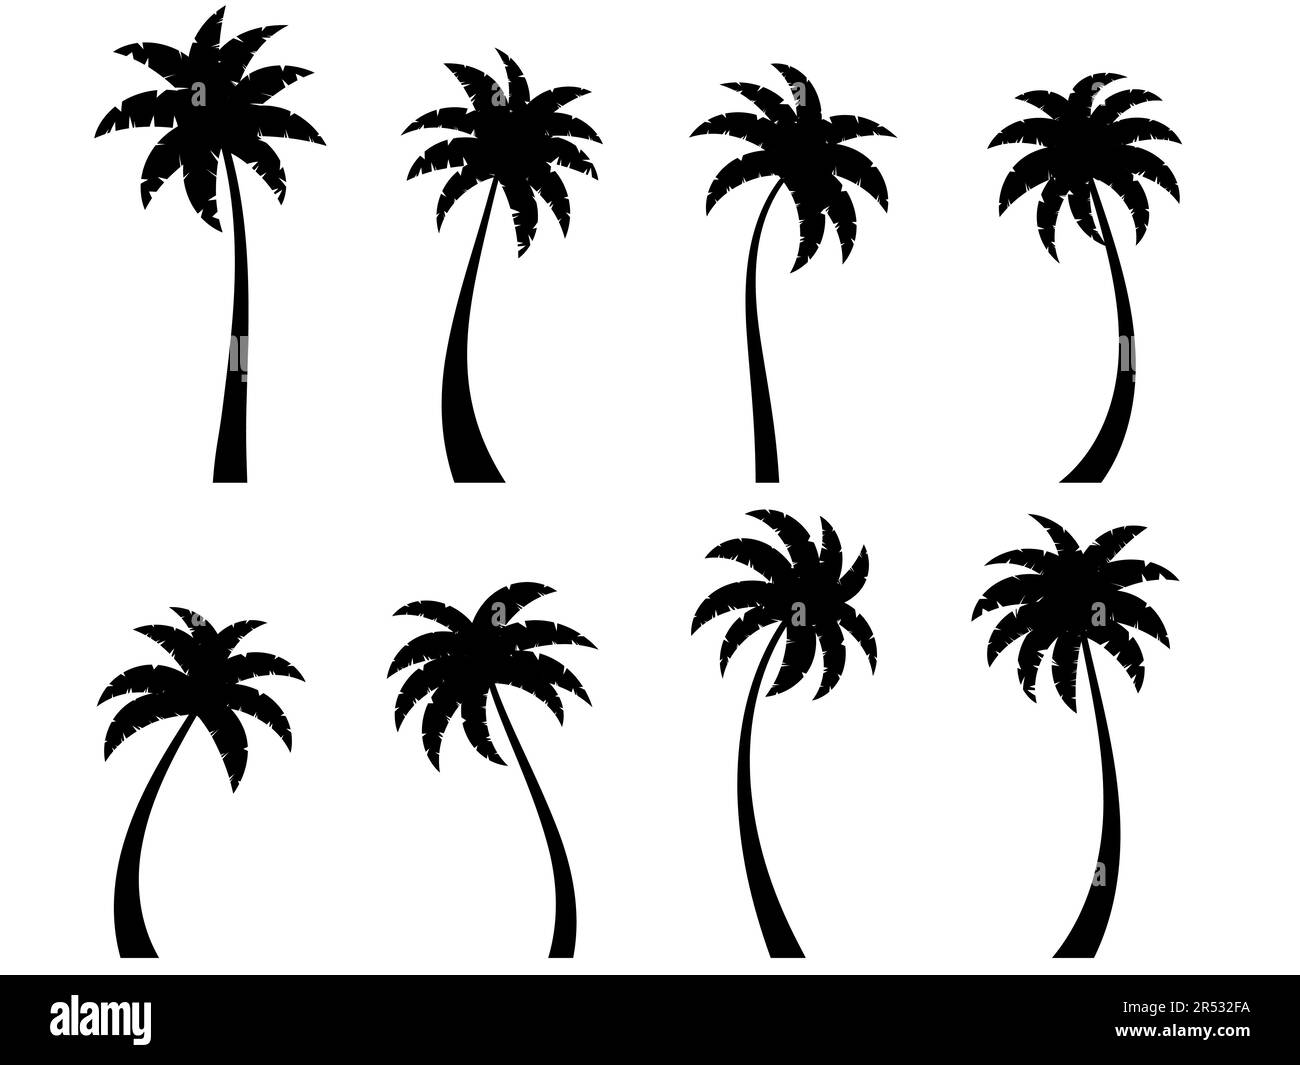 Palmeras curvas negras fijadas aisladas sobre fondo blanco. Siluetas de palma dobladas. Diseño de palmeras para carteles, banners y artículos promocionales. VECT Ilustración del Vector